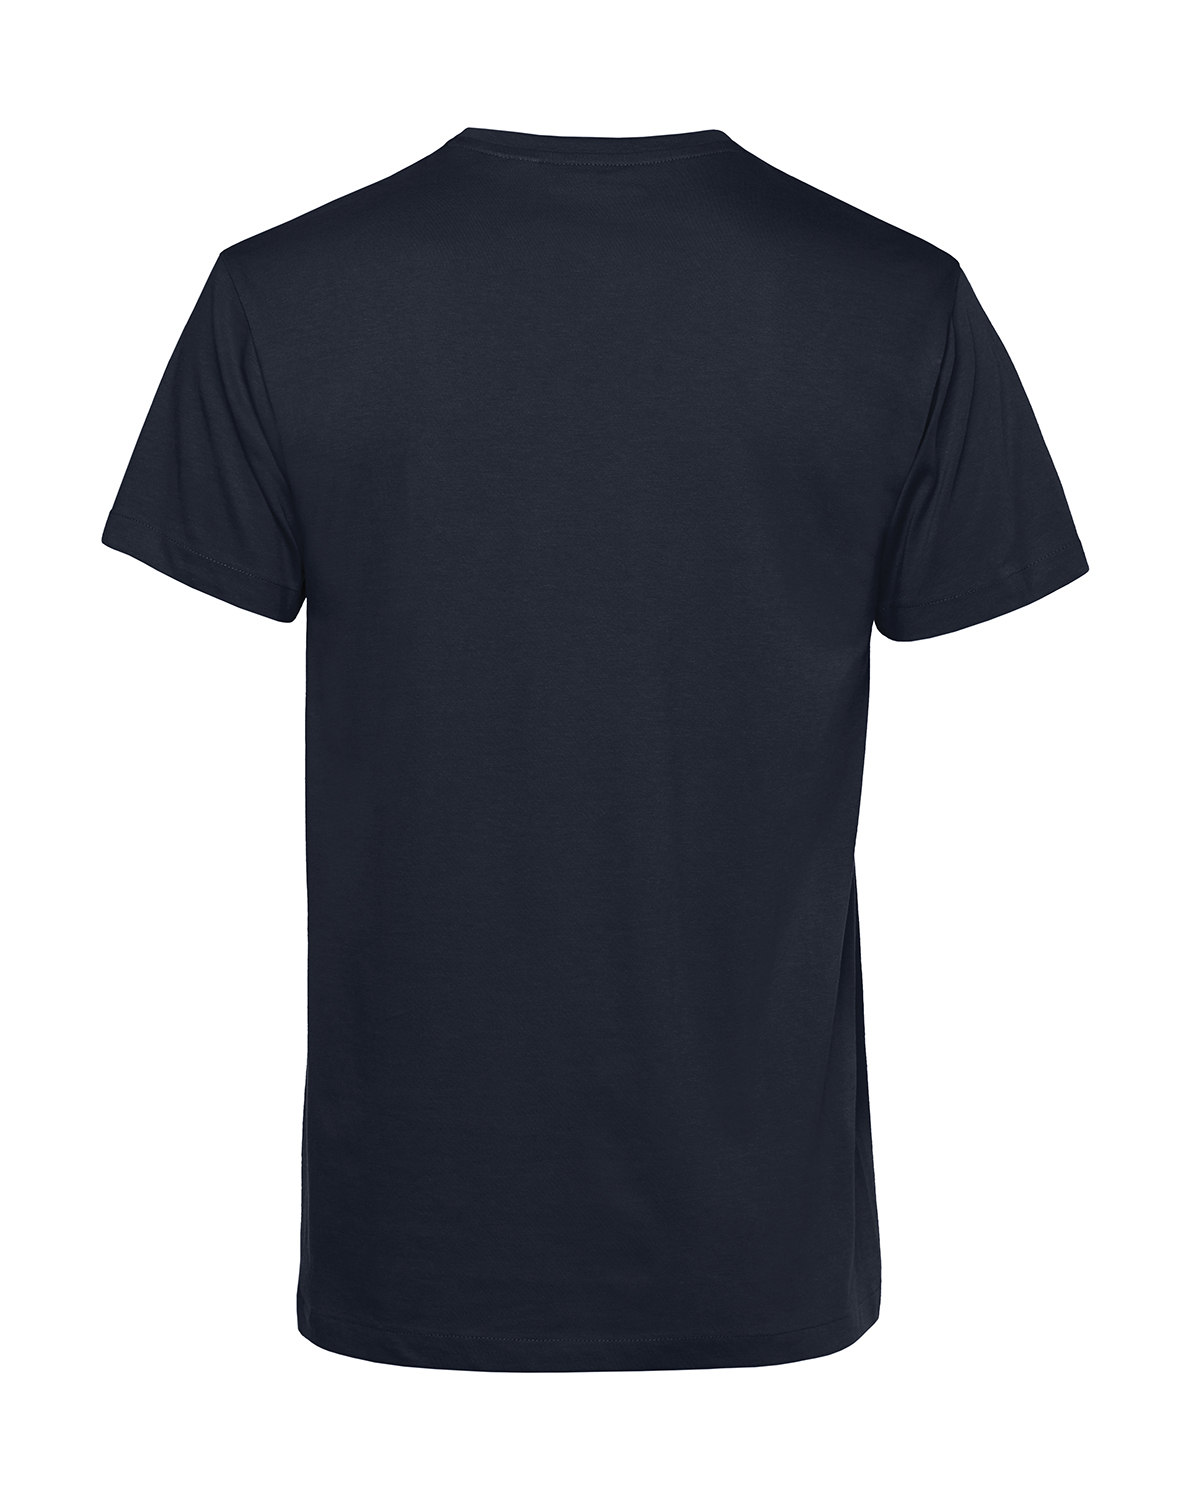 Nachhaltiges T-Shirt Herren 2Takt - Ganze Tankfüllung